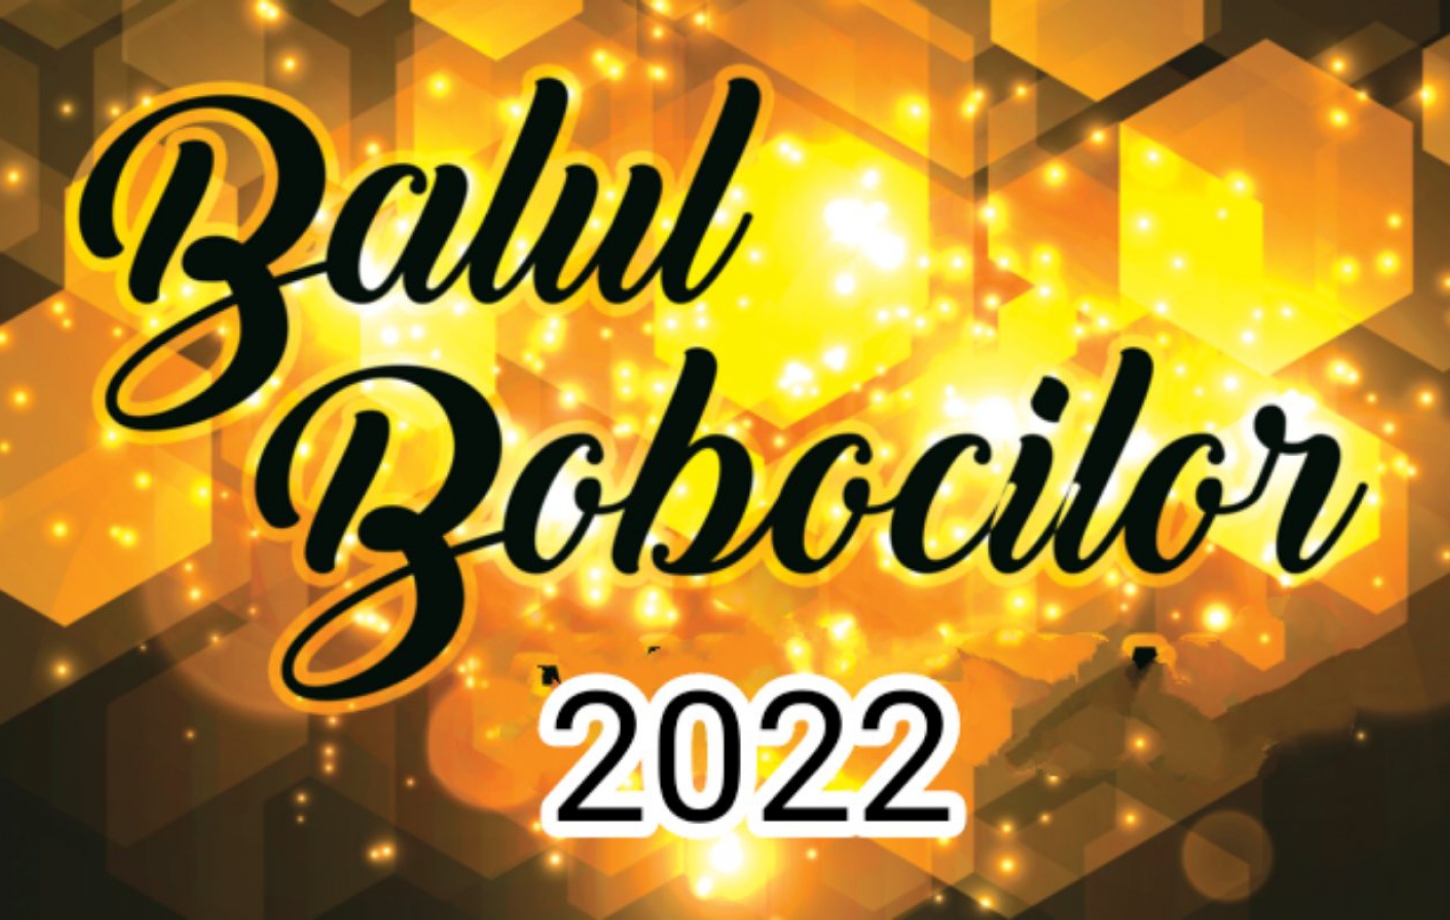 BALUL BOLOCILOR 2022!!!